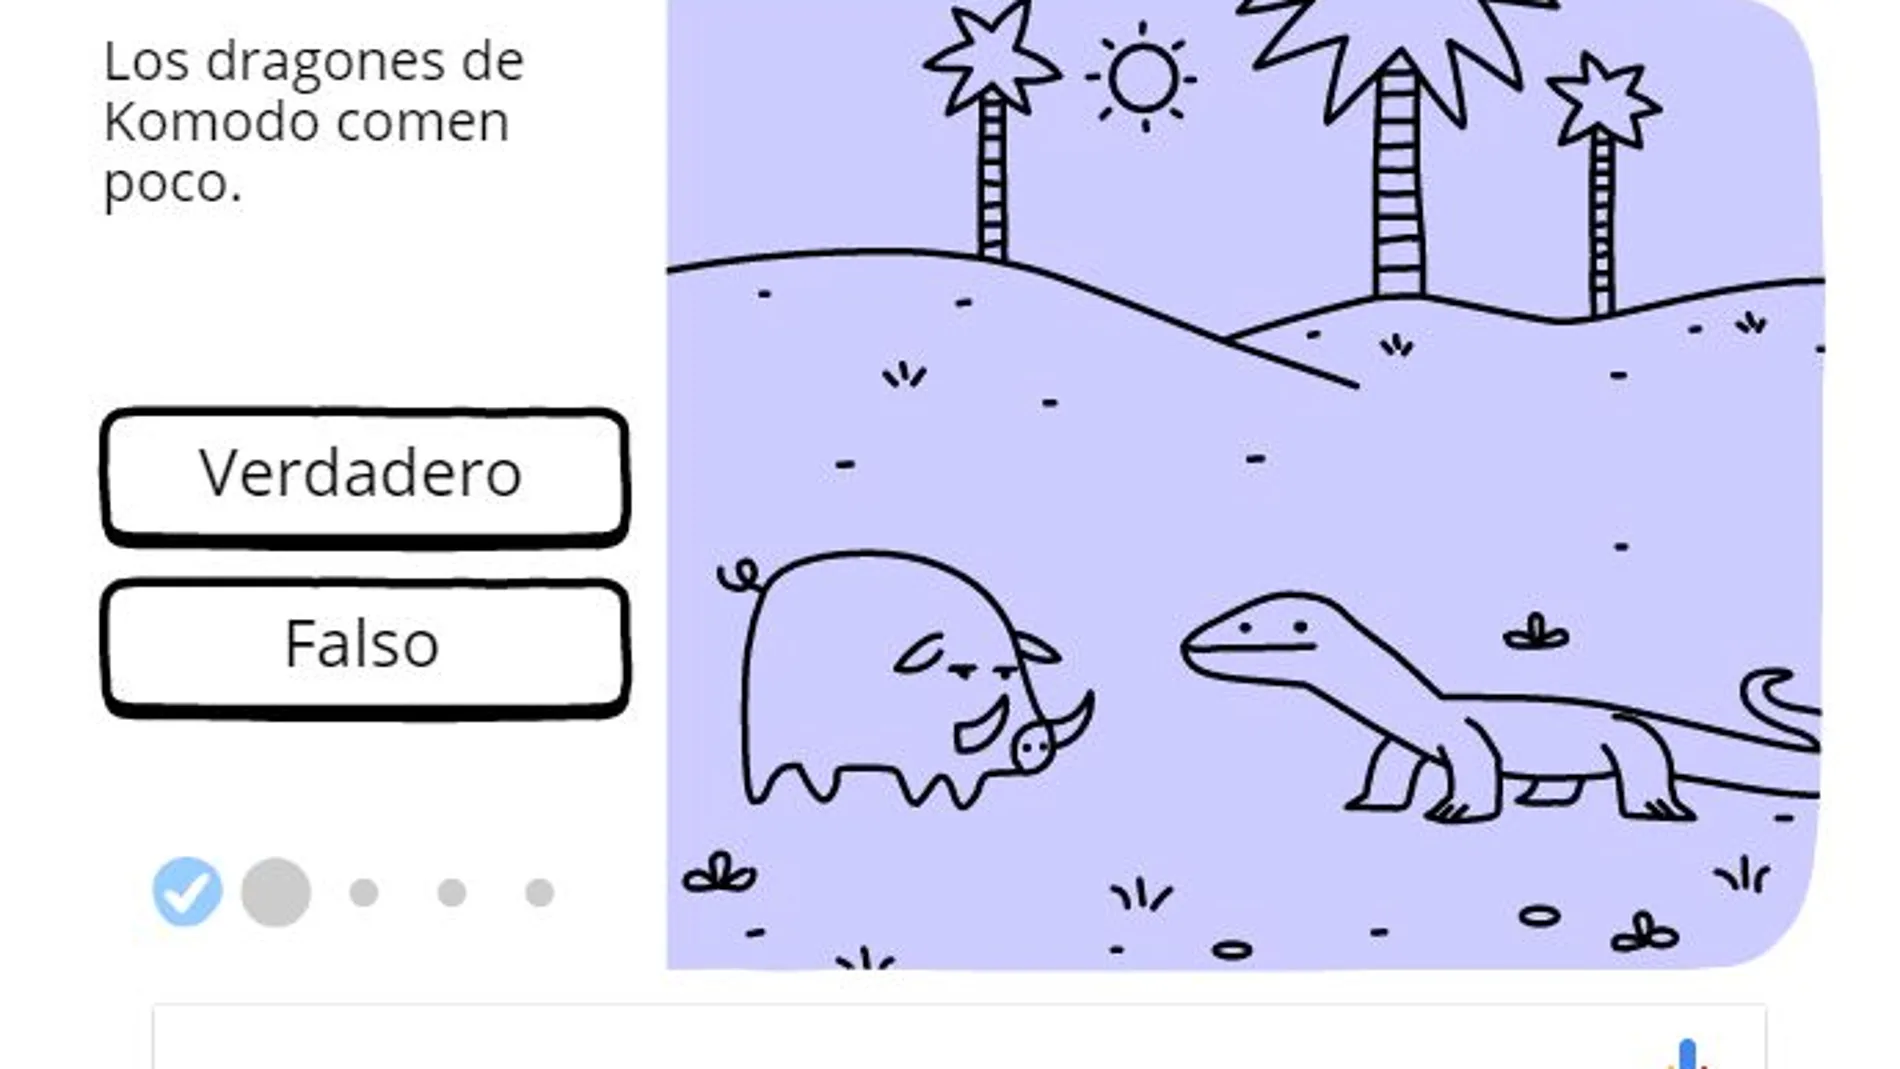 El doodle sobre el dragón de Komodo